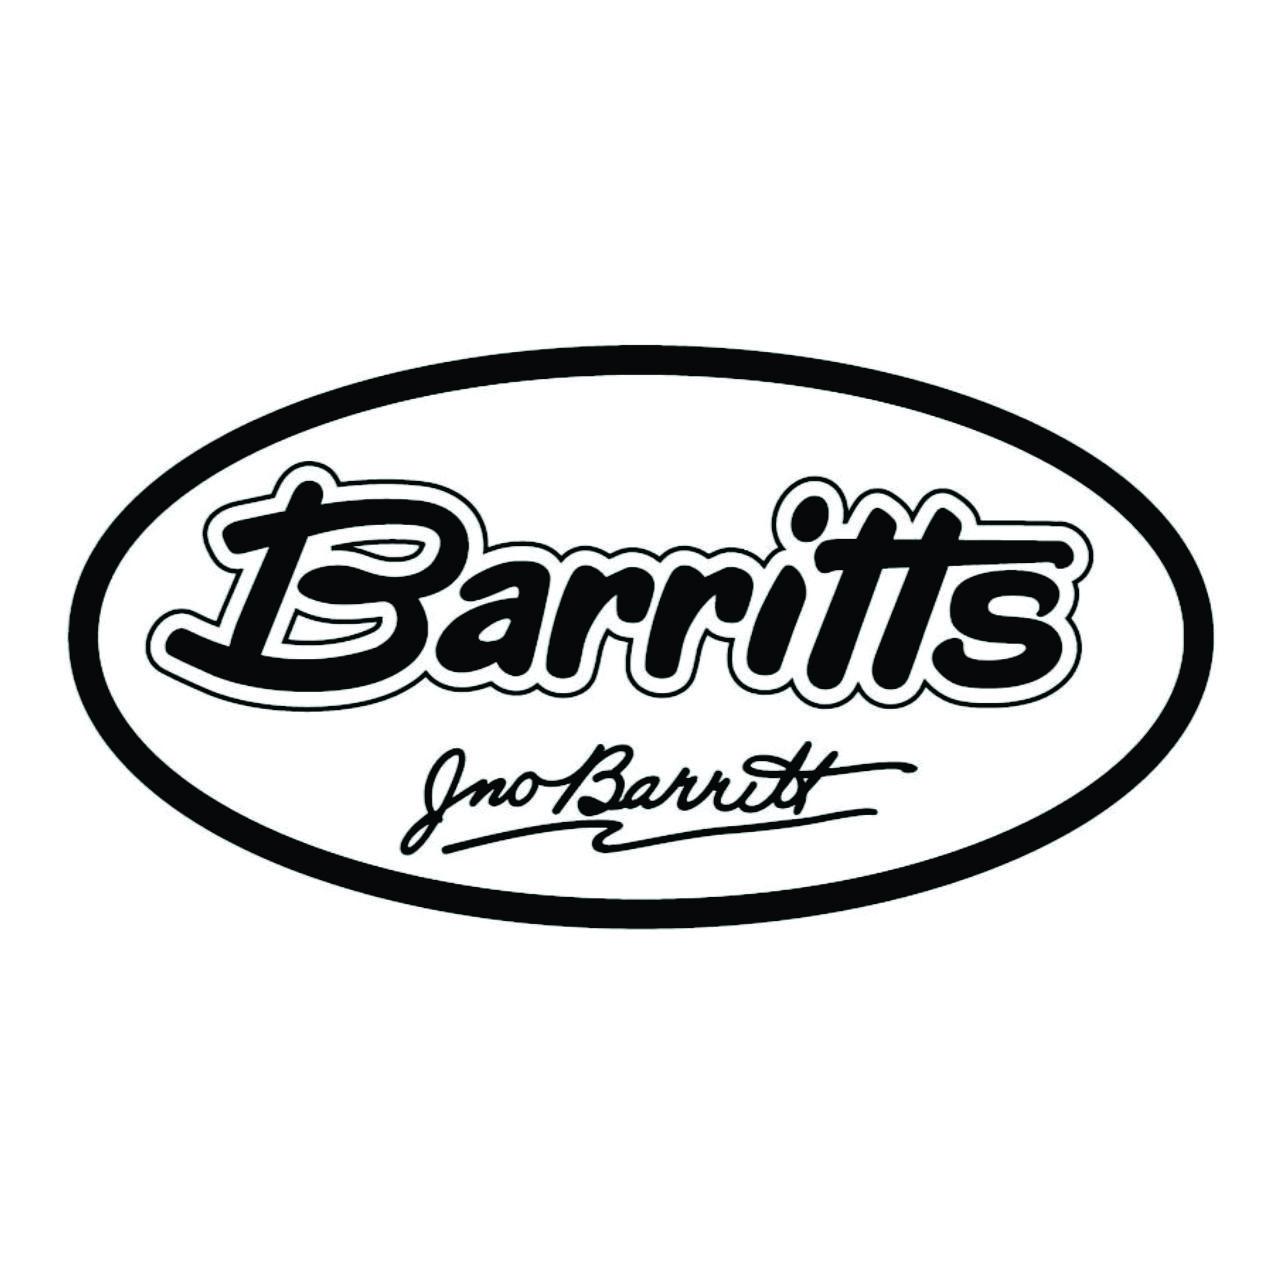 Barritts